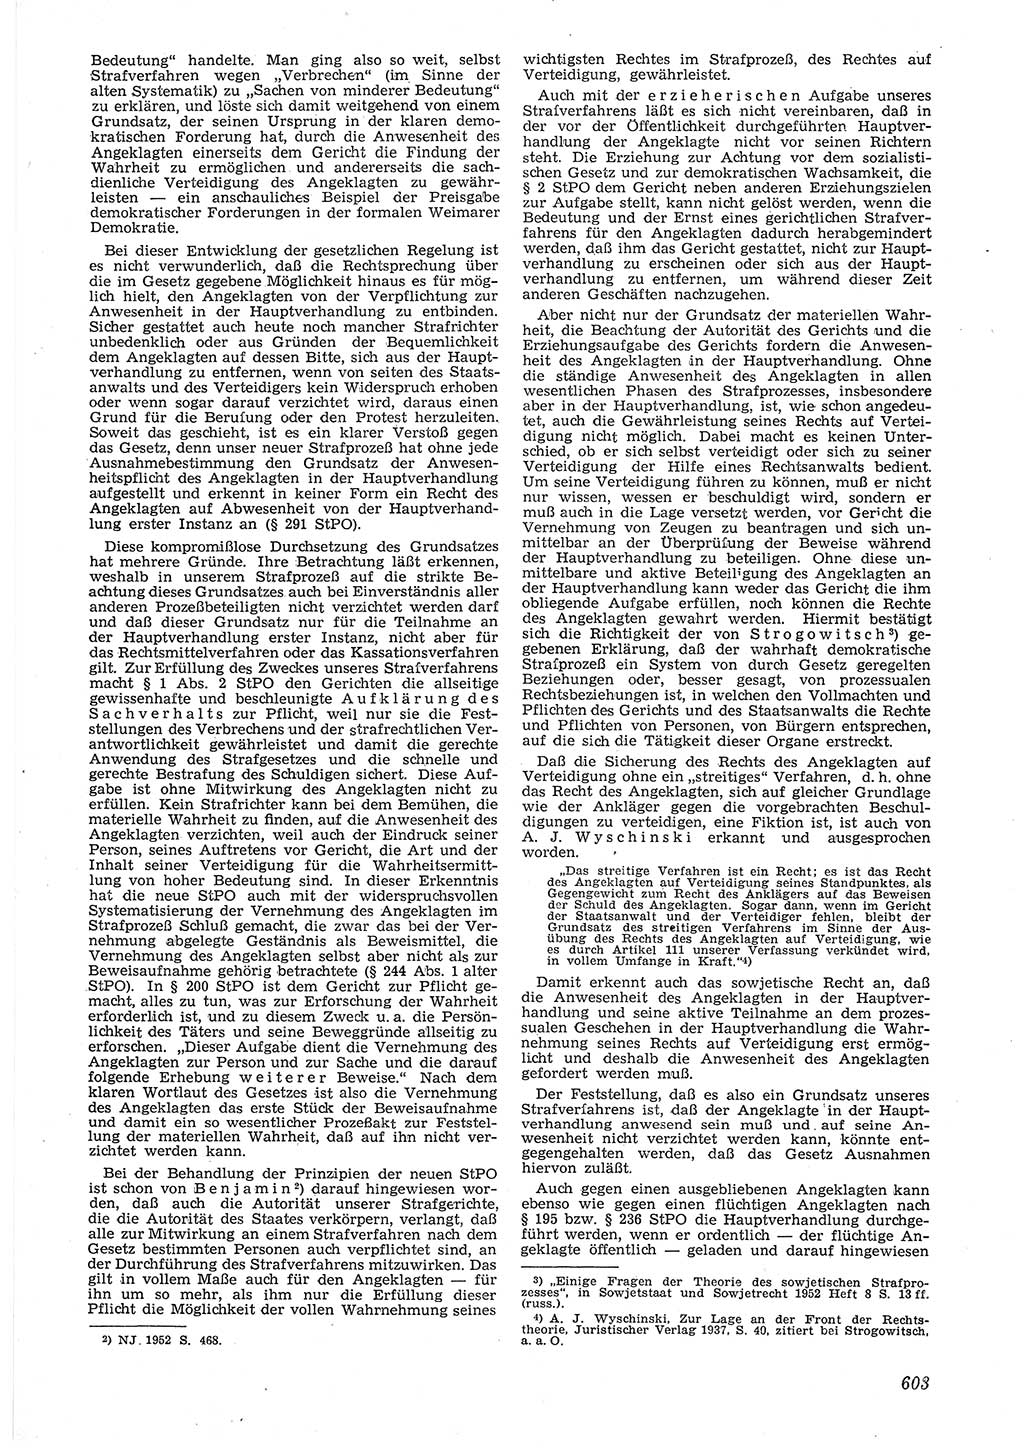 Neue Justiz (NJ), Zeitschrift für Recht und Rechtswissenschaft [Deutsche Demokratische Republik (DDR)], 6. Jahrgang 1952, Seite 603 (NJ DDR 1952, S. 603)